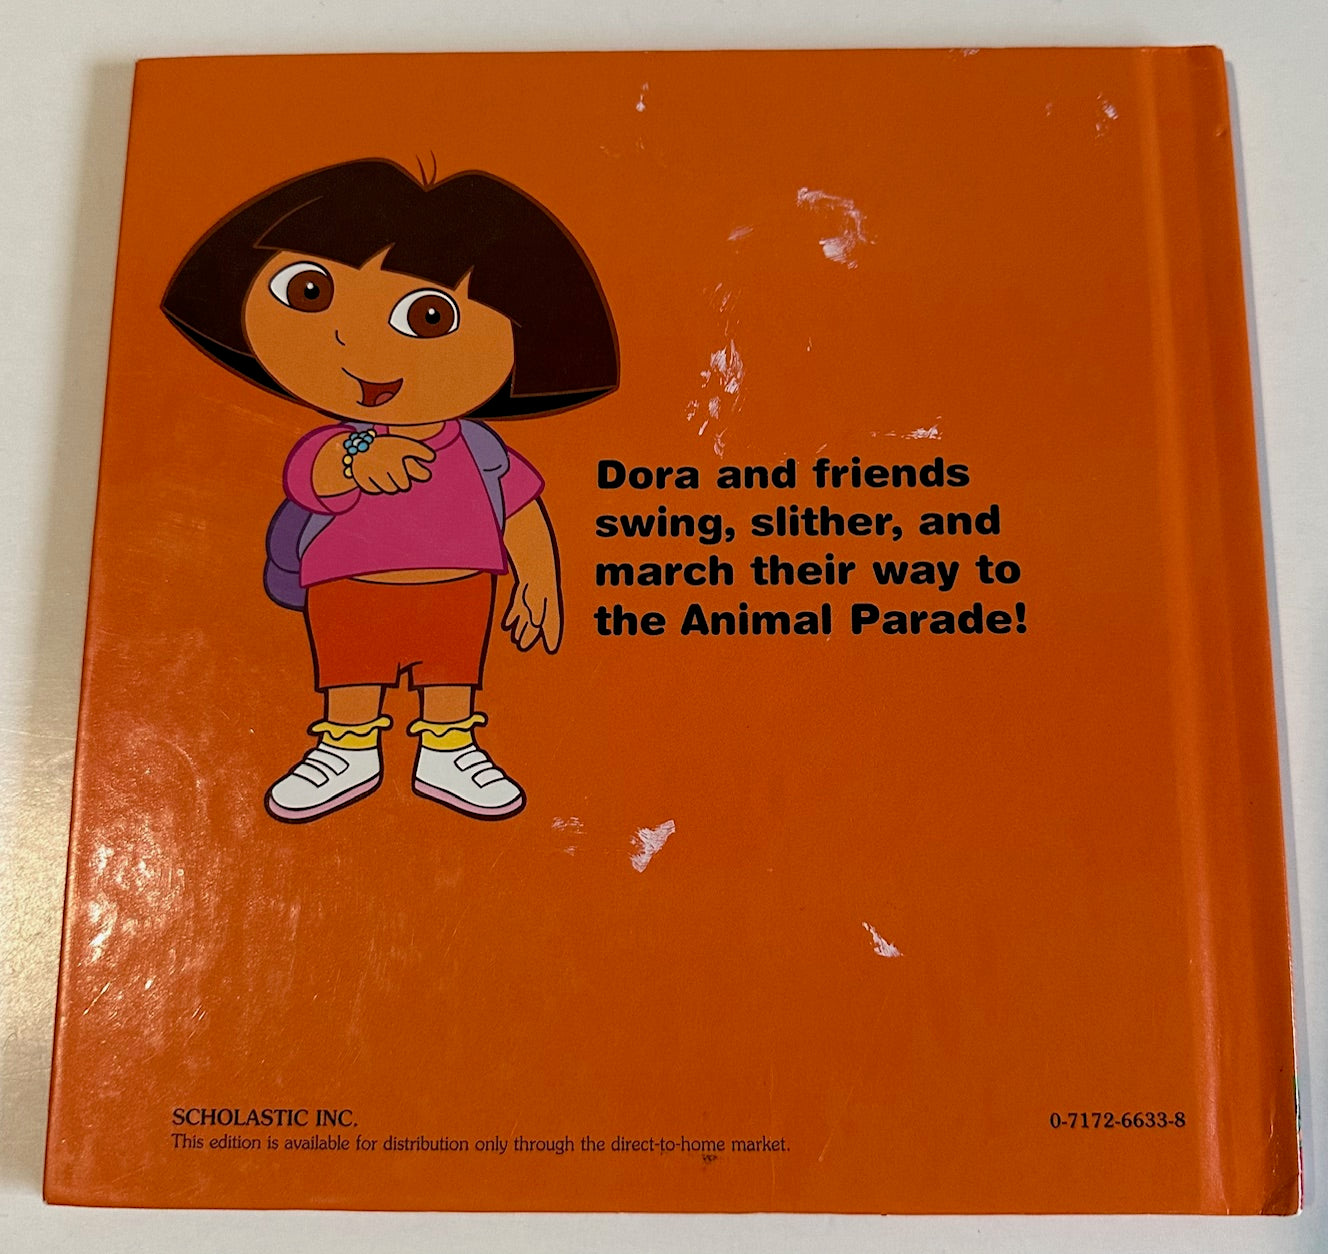 Dora the Explorer, "Animal Parade"